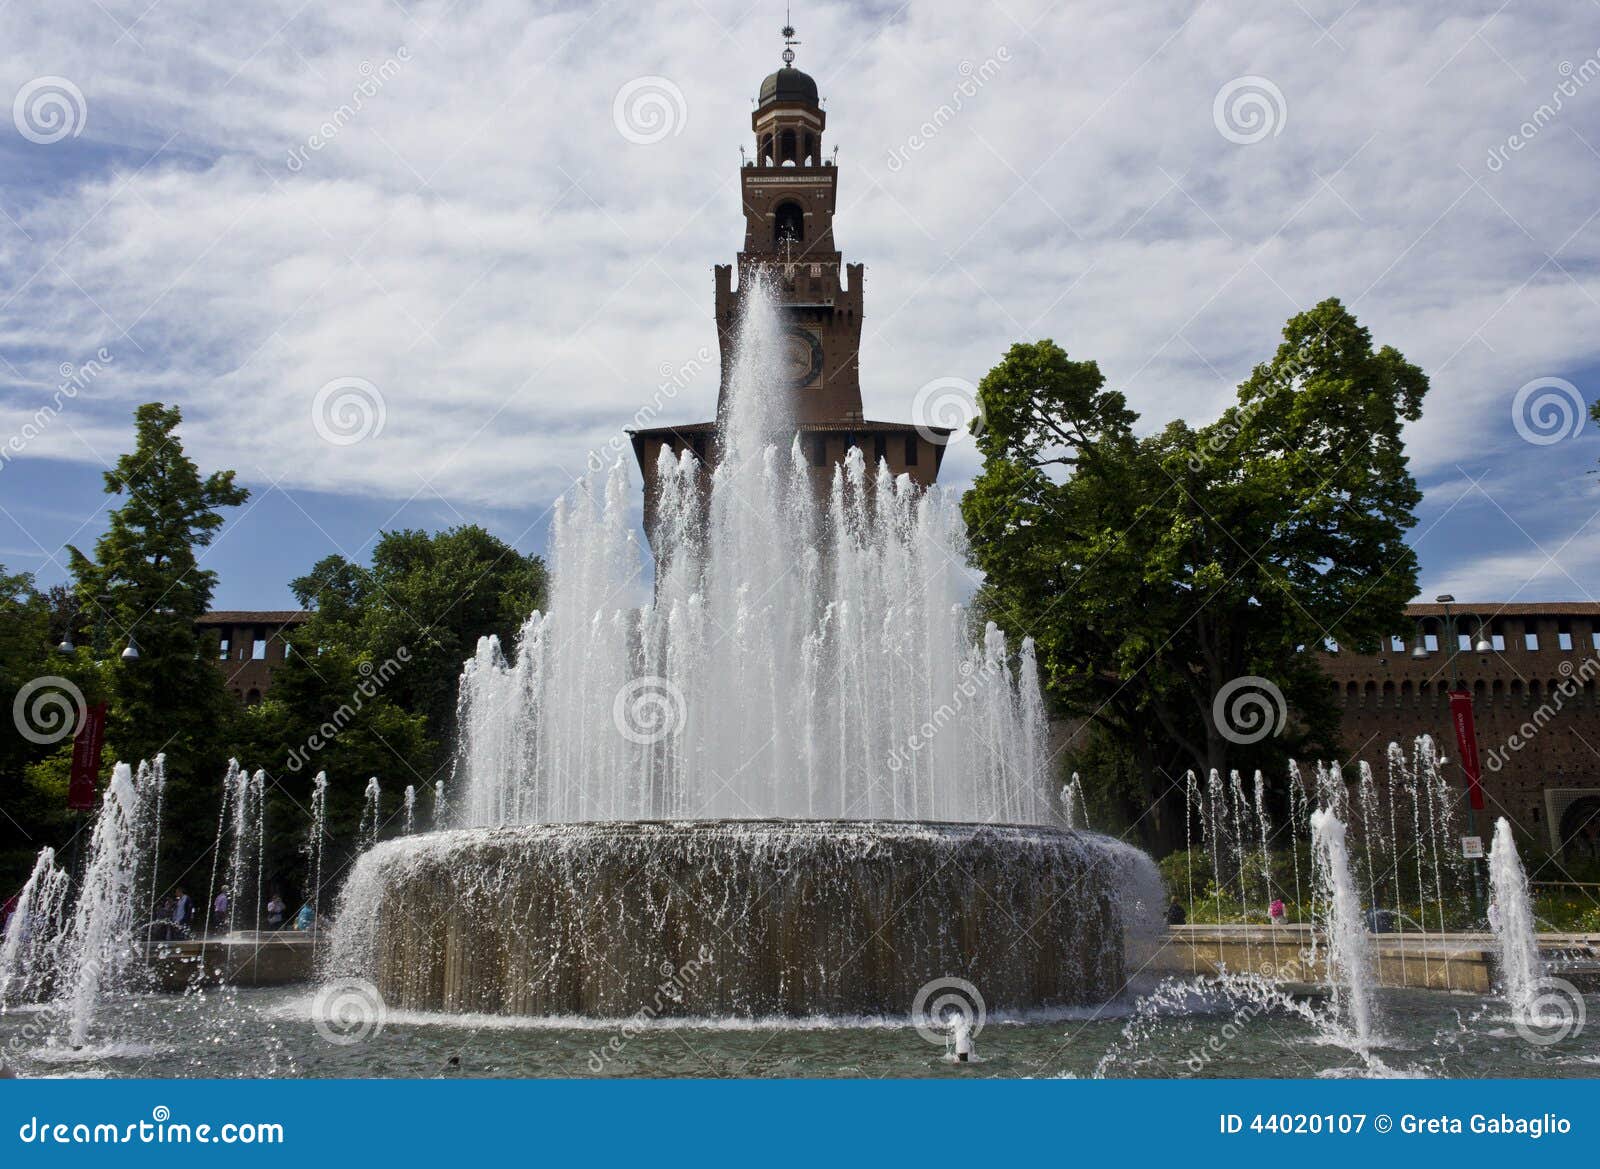 Milan Sforza Castle Fountain Photographie éditorial - Image du repère ...